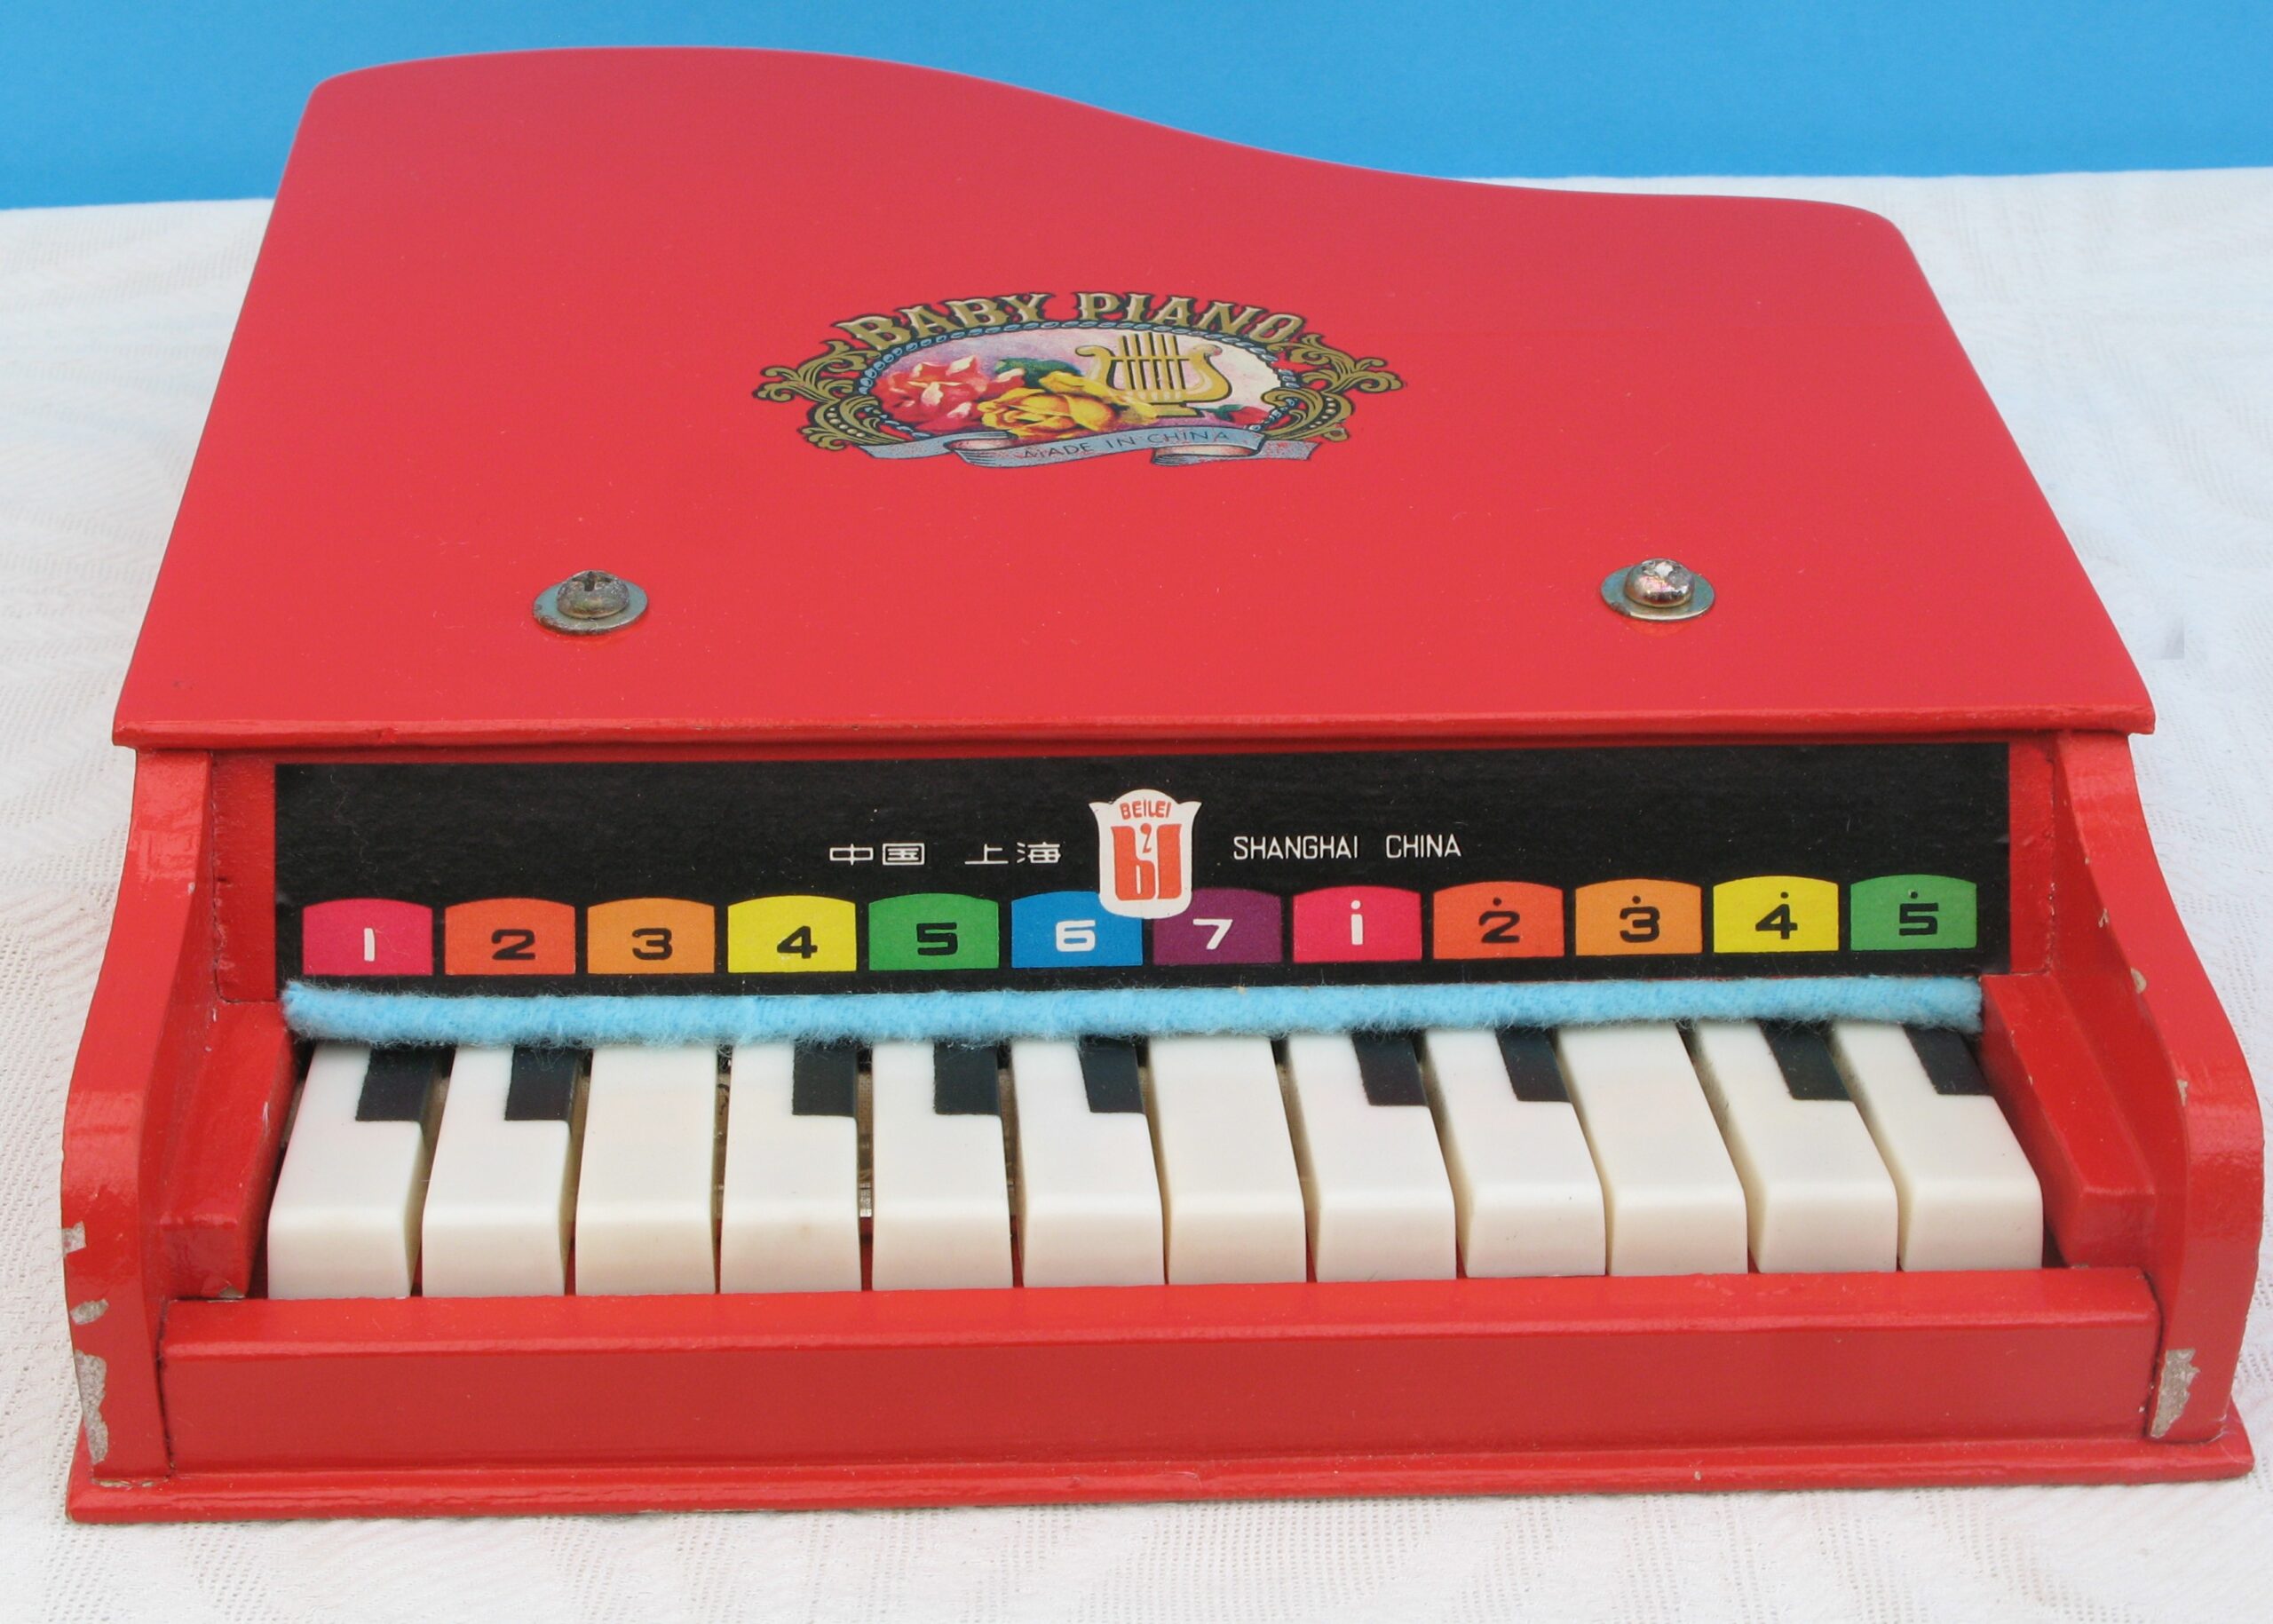 my tiny piano 80s toy